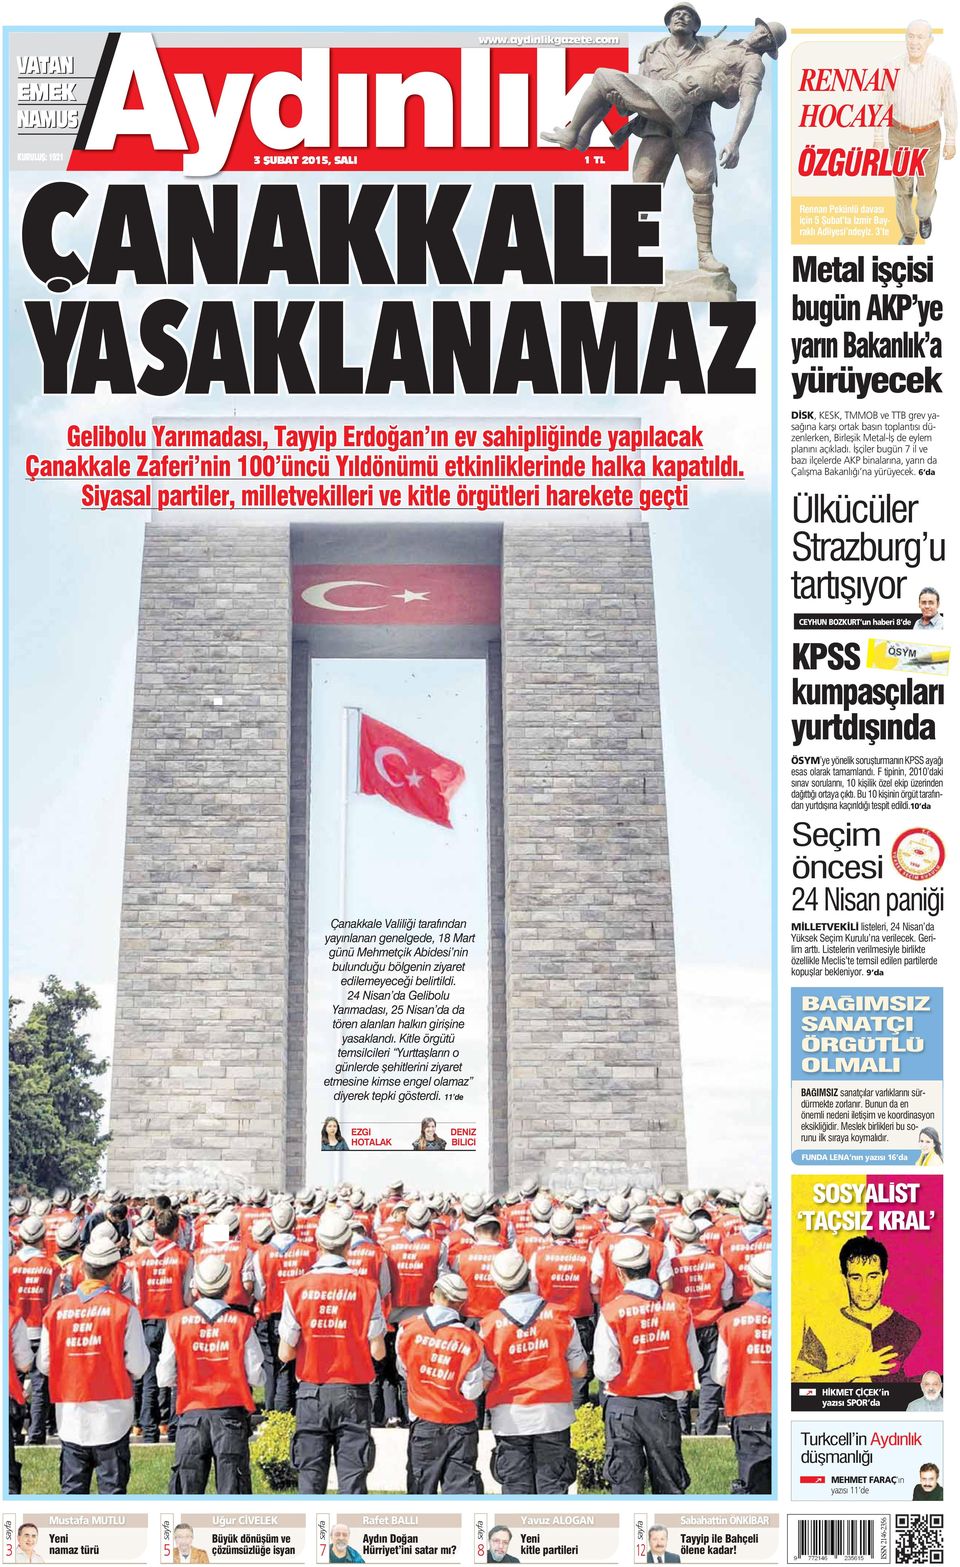 Siyaal partiler, milletvekilleri ve kitle örgütleri harekete geçti Çanakkale Valilii tarafndan yaynlanan genelgede, 18 Mart günü Mehmetçik Abidei nin bulunduu bölgenin ziyaret edilemeyecei belirtildi.